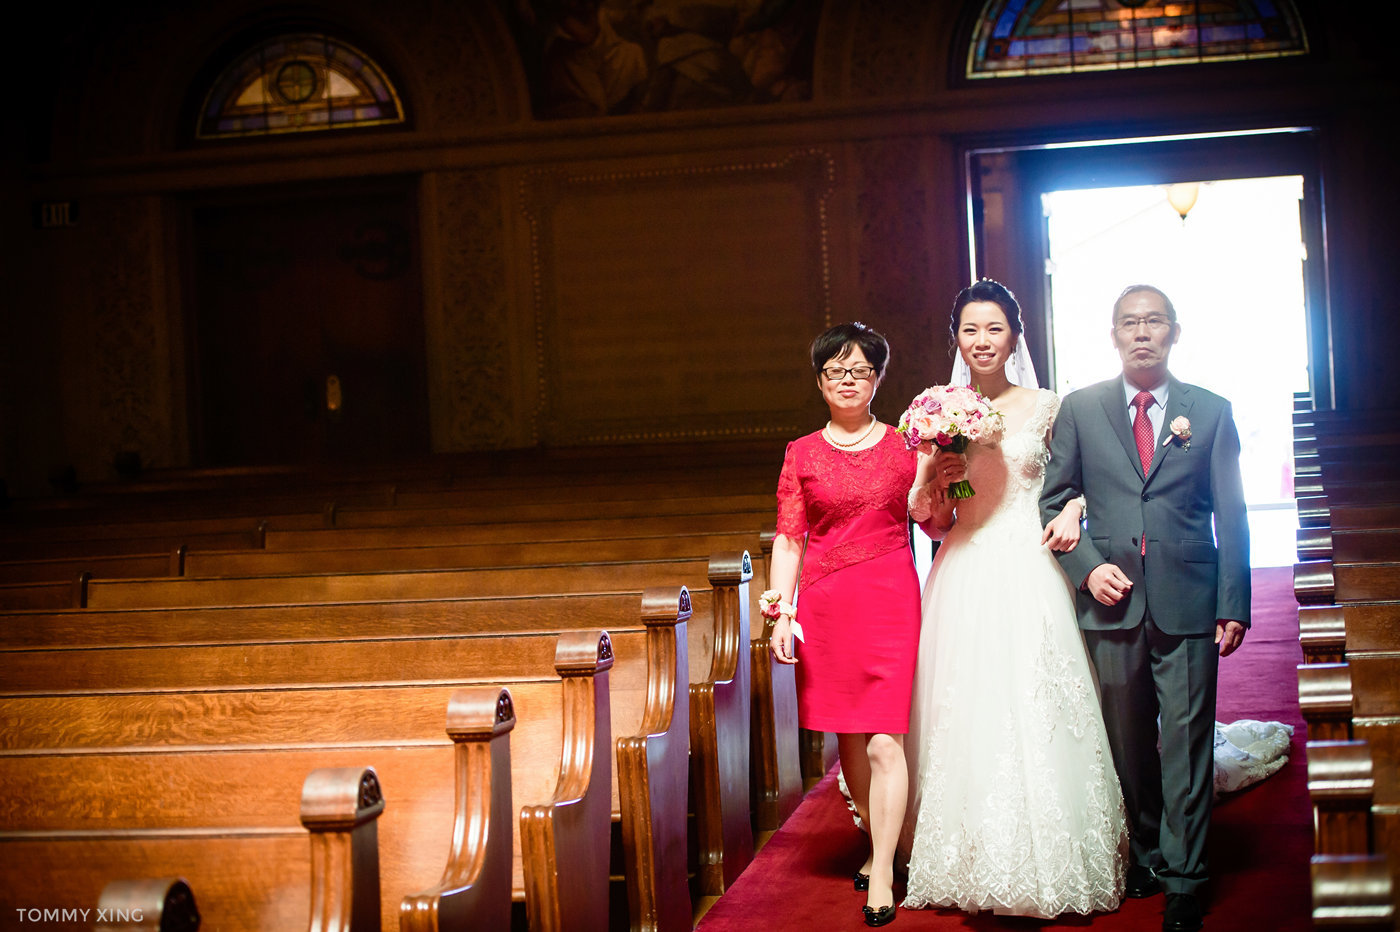 stanford memorial church wedding 旧金山湾区斯坦福教堂婚礼 Tommy Xing Photography 040.jpg